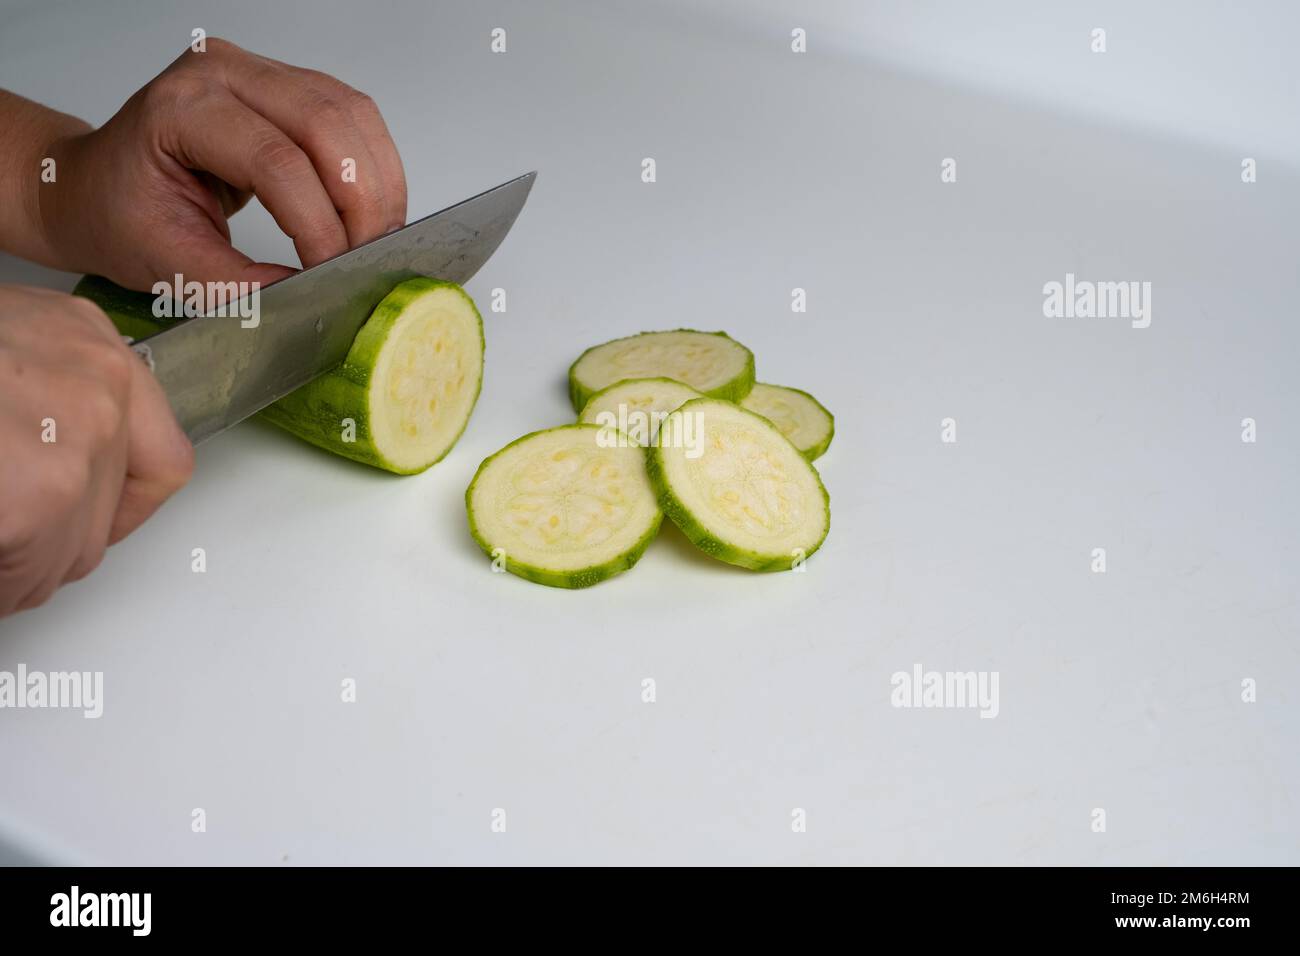 https://c8.alamy.com/compit/2m6h4rm/zucchine-da-taglio-a-mano-femmina-la-mano-taglia-le-zucchine-verdi-con-un-coltello-su-sfondo-bianco-2m6h4rm.jpg